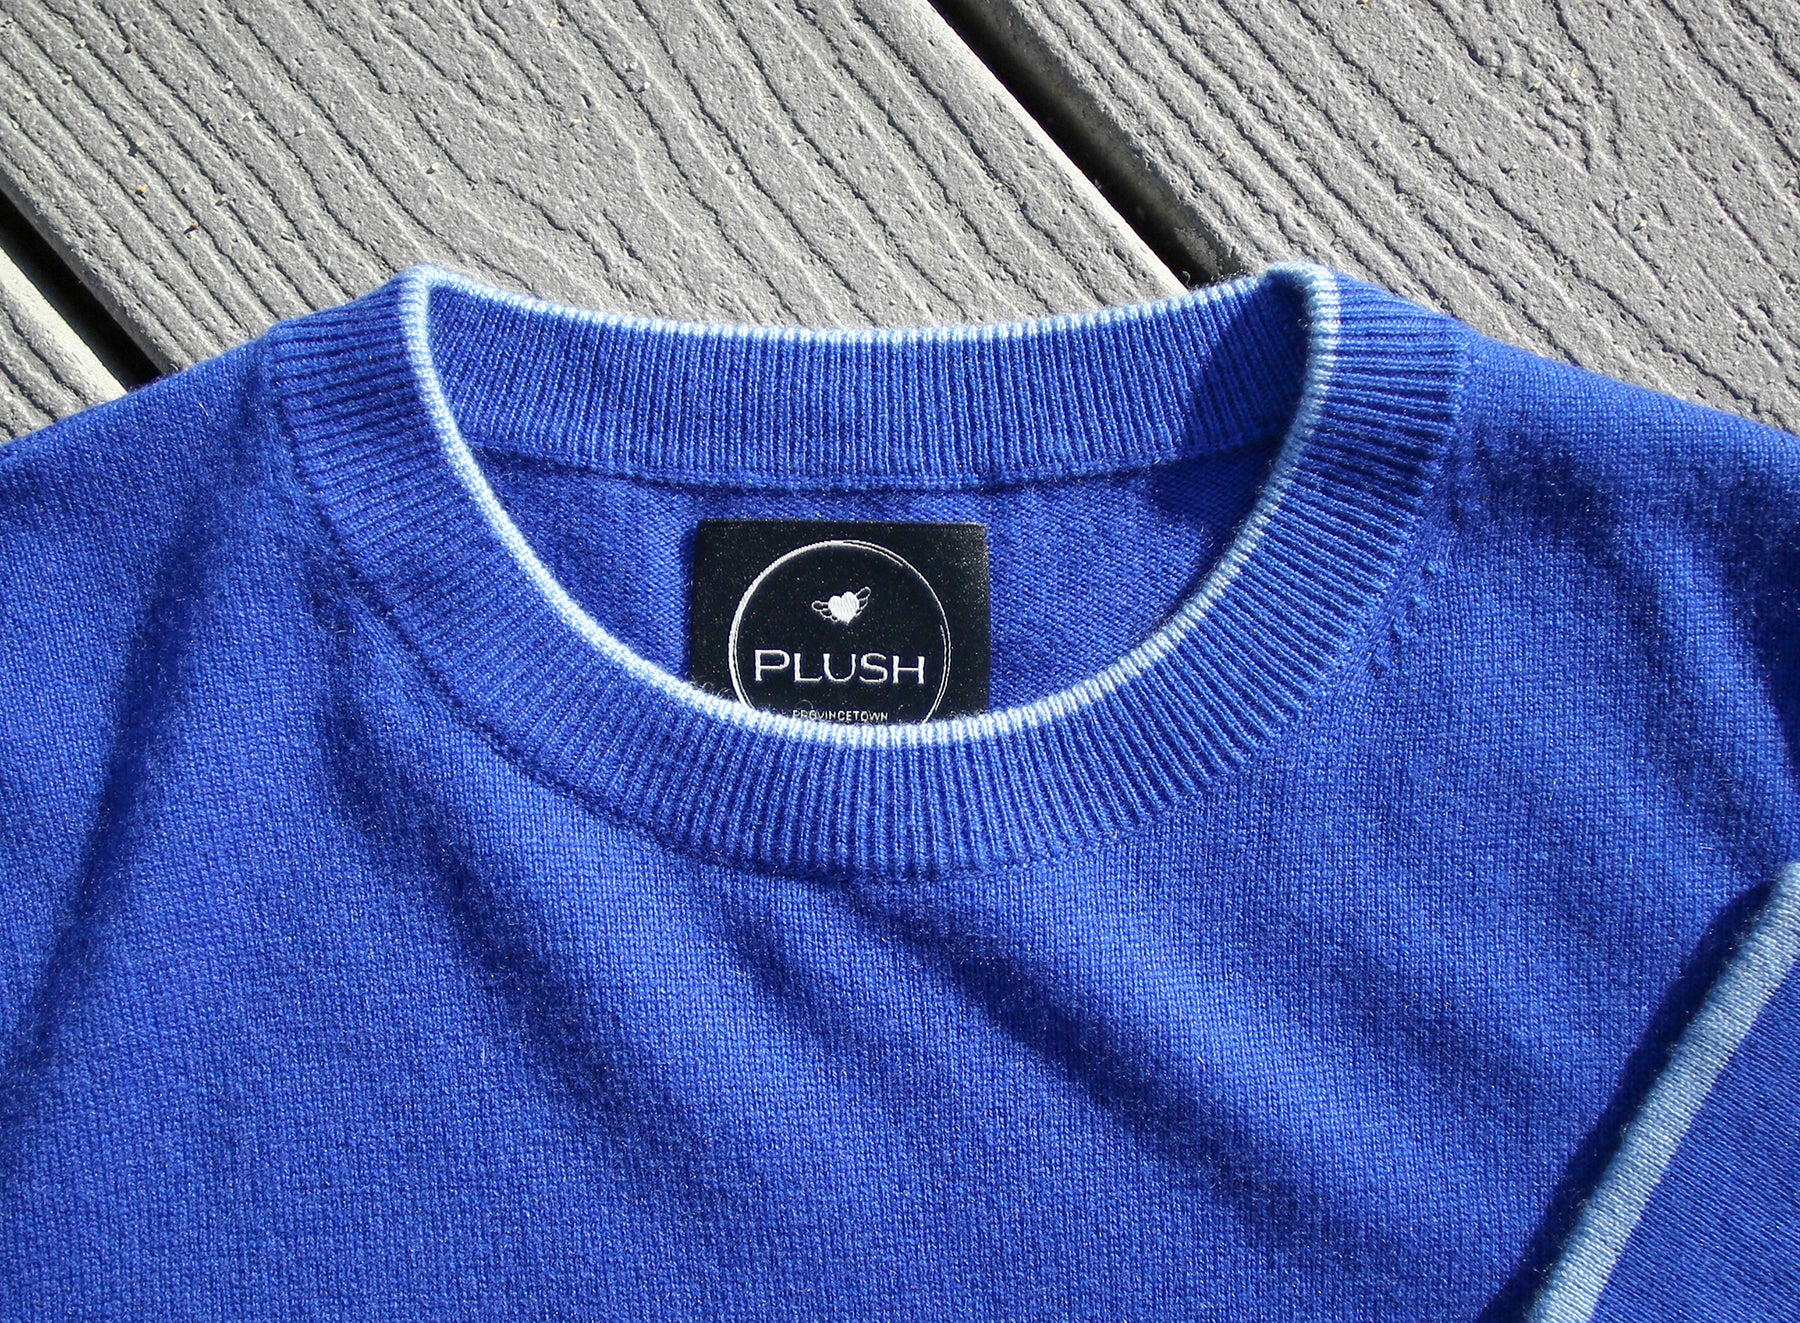 Plush "Shark Intarsia" Silk Cashmere Sweater